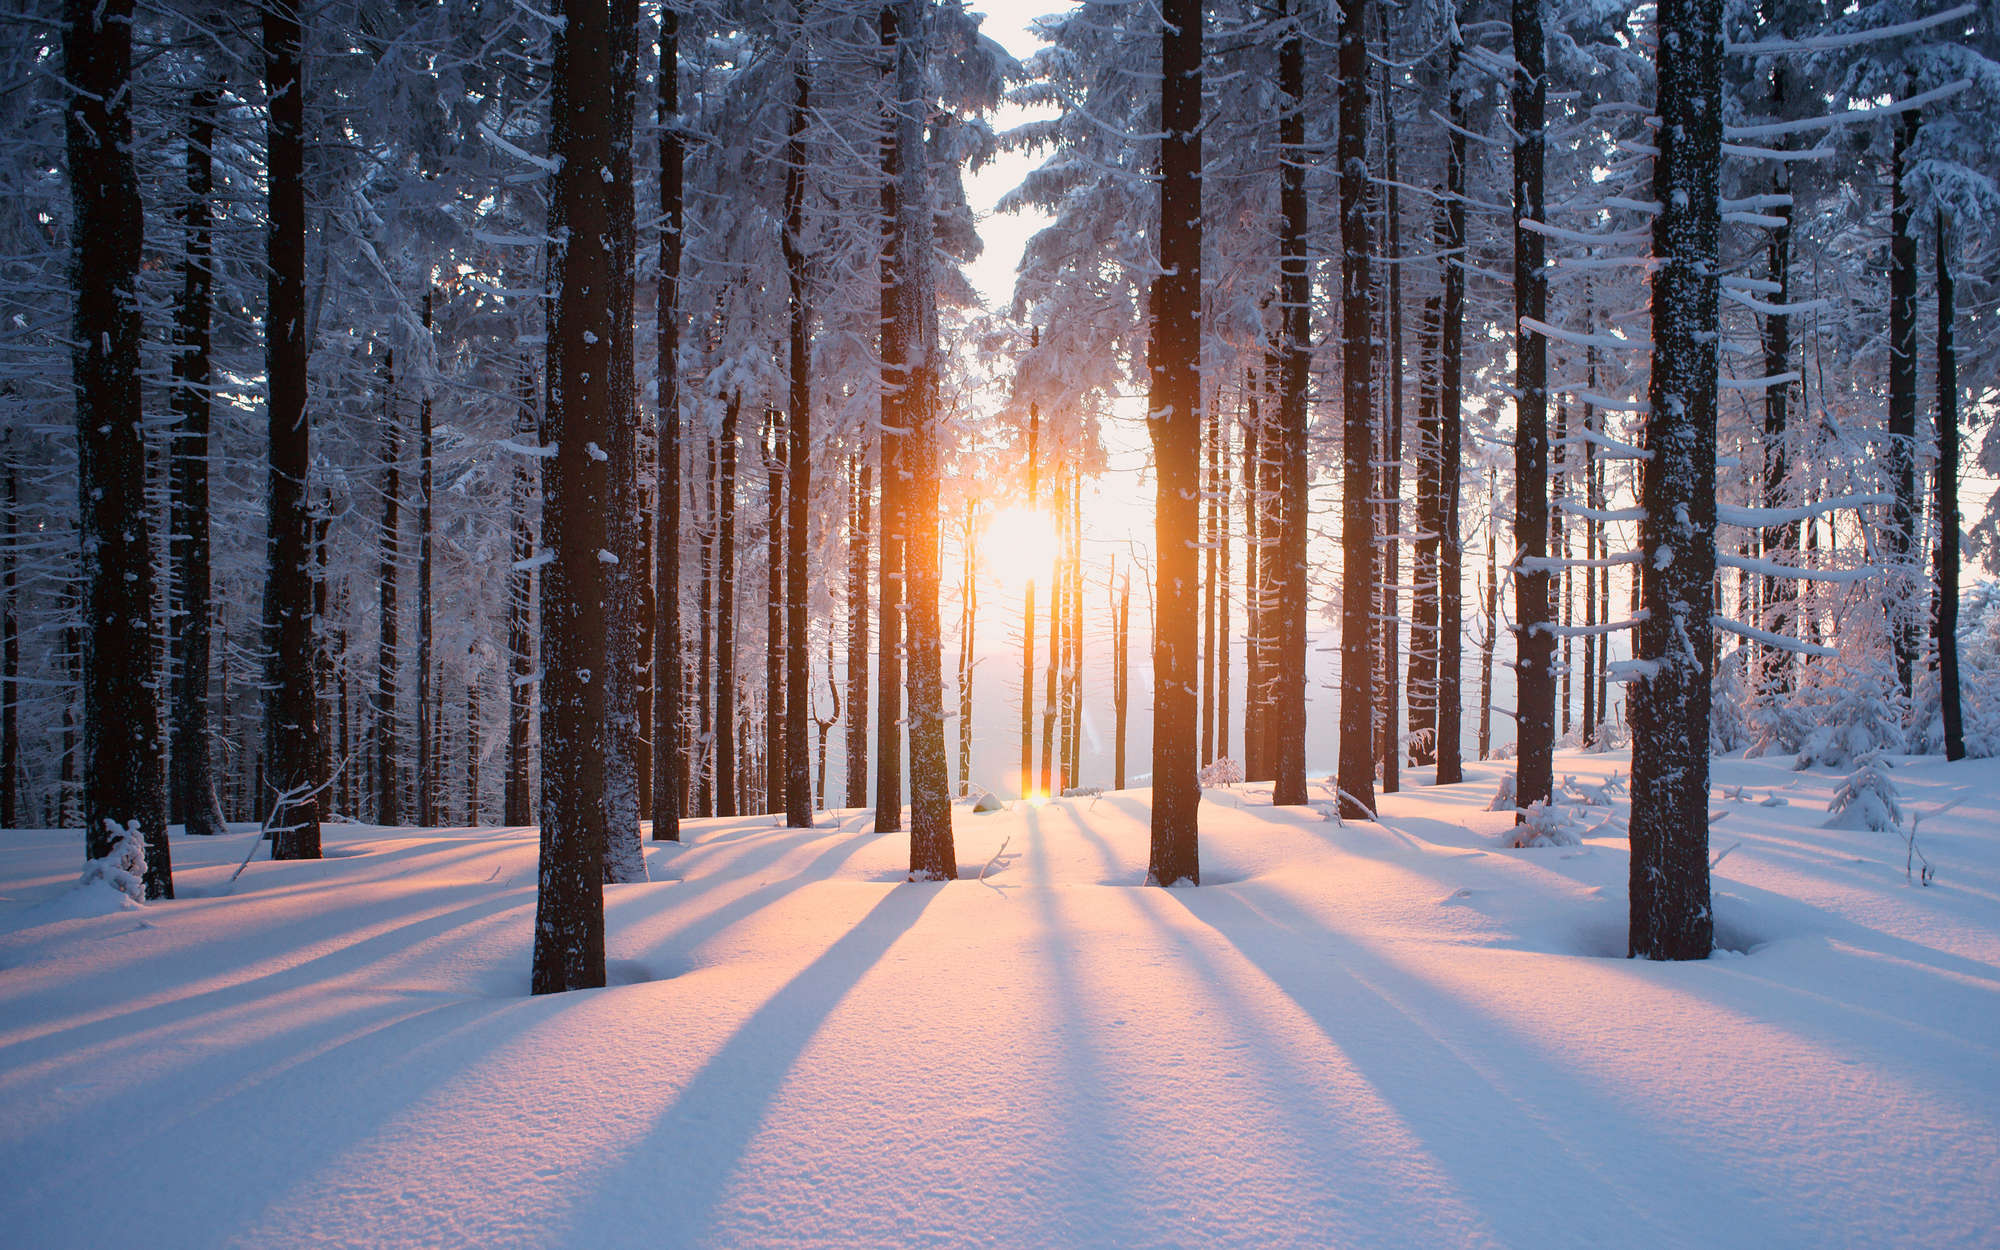             Fototapete Schnee im Winterwald – Mattes Glattvlies
        